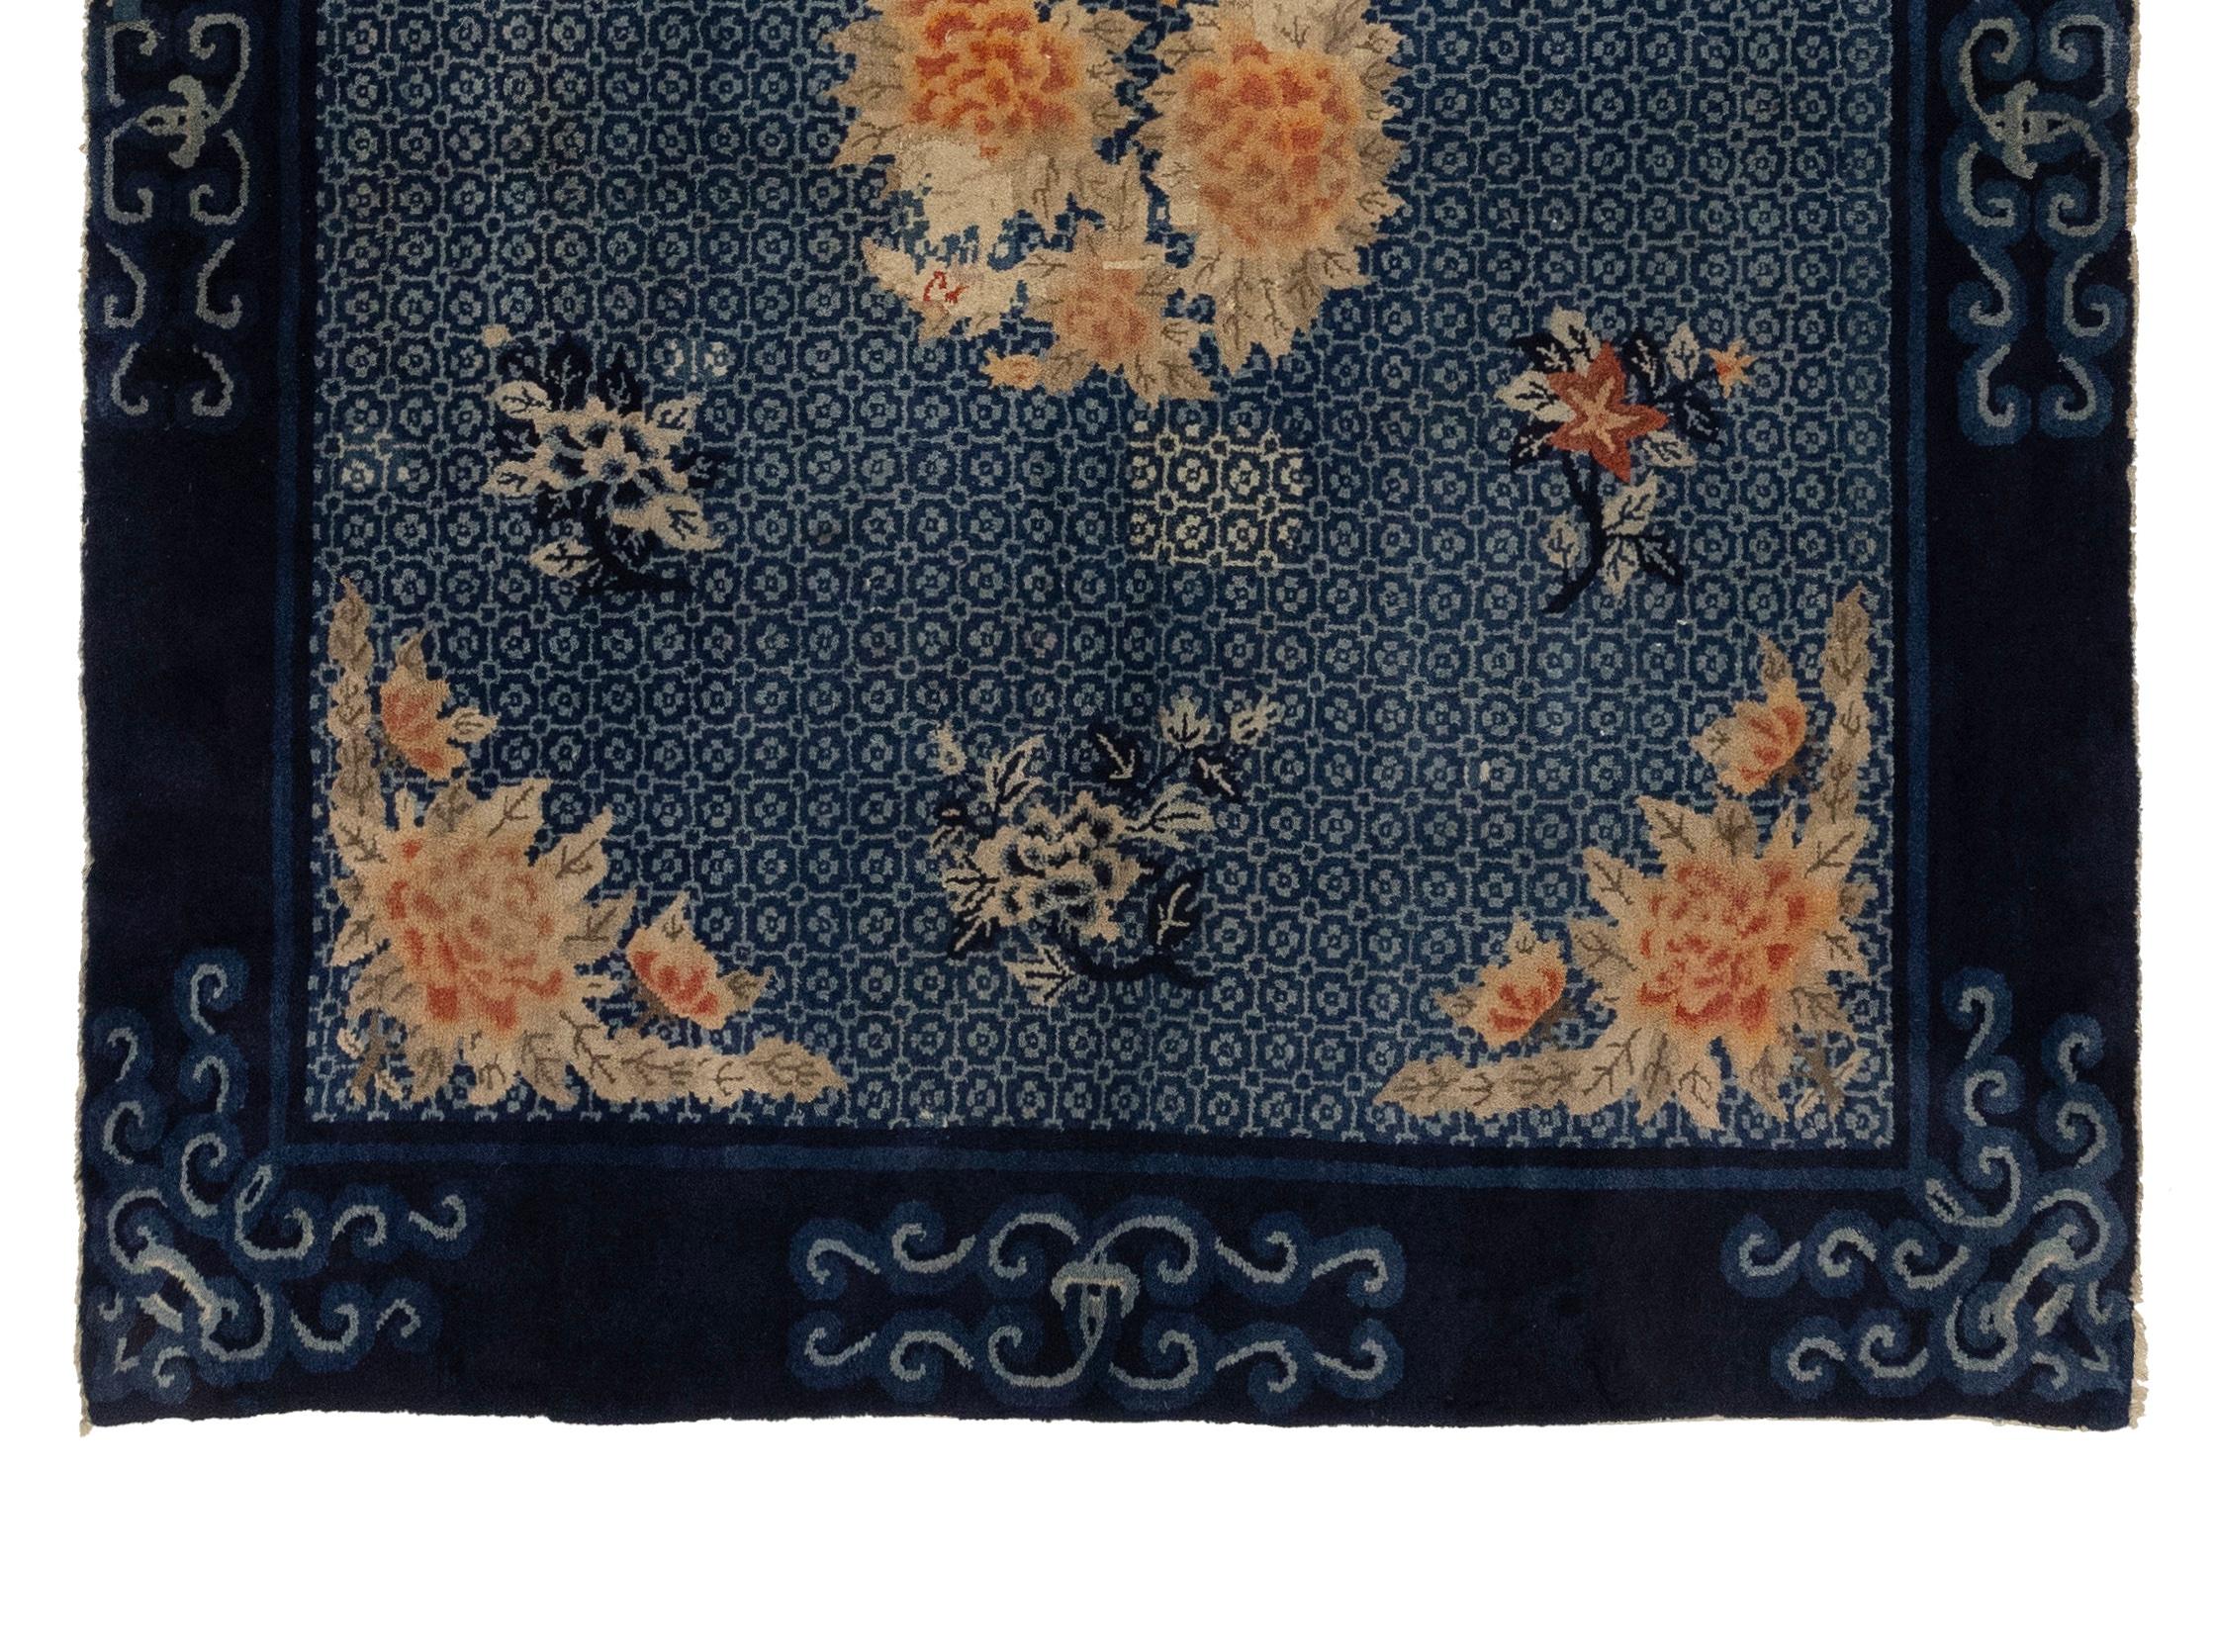 Ce tapis a été tissé dans la ville de Baotou, dans l'actuelle Mongolie intérieure. Les tapis produits dans cette région étaient connus pour leurs poils denses et pelucheux, et les tapis illustrés étaient particulièrement convoités. Les images ont